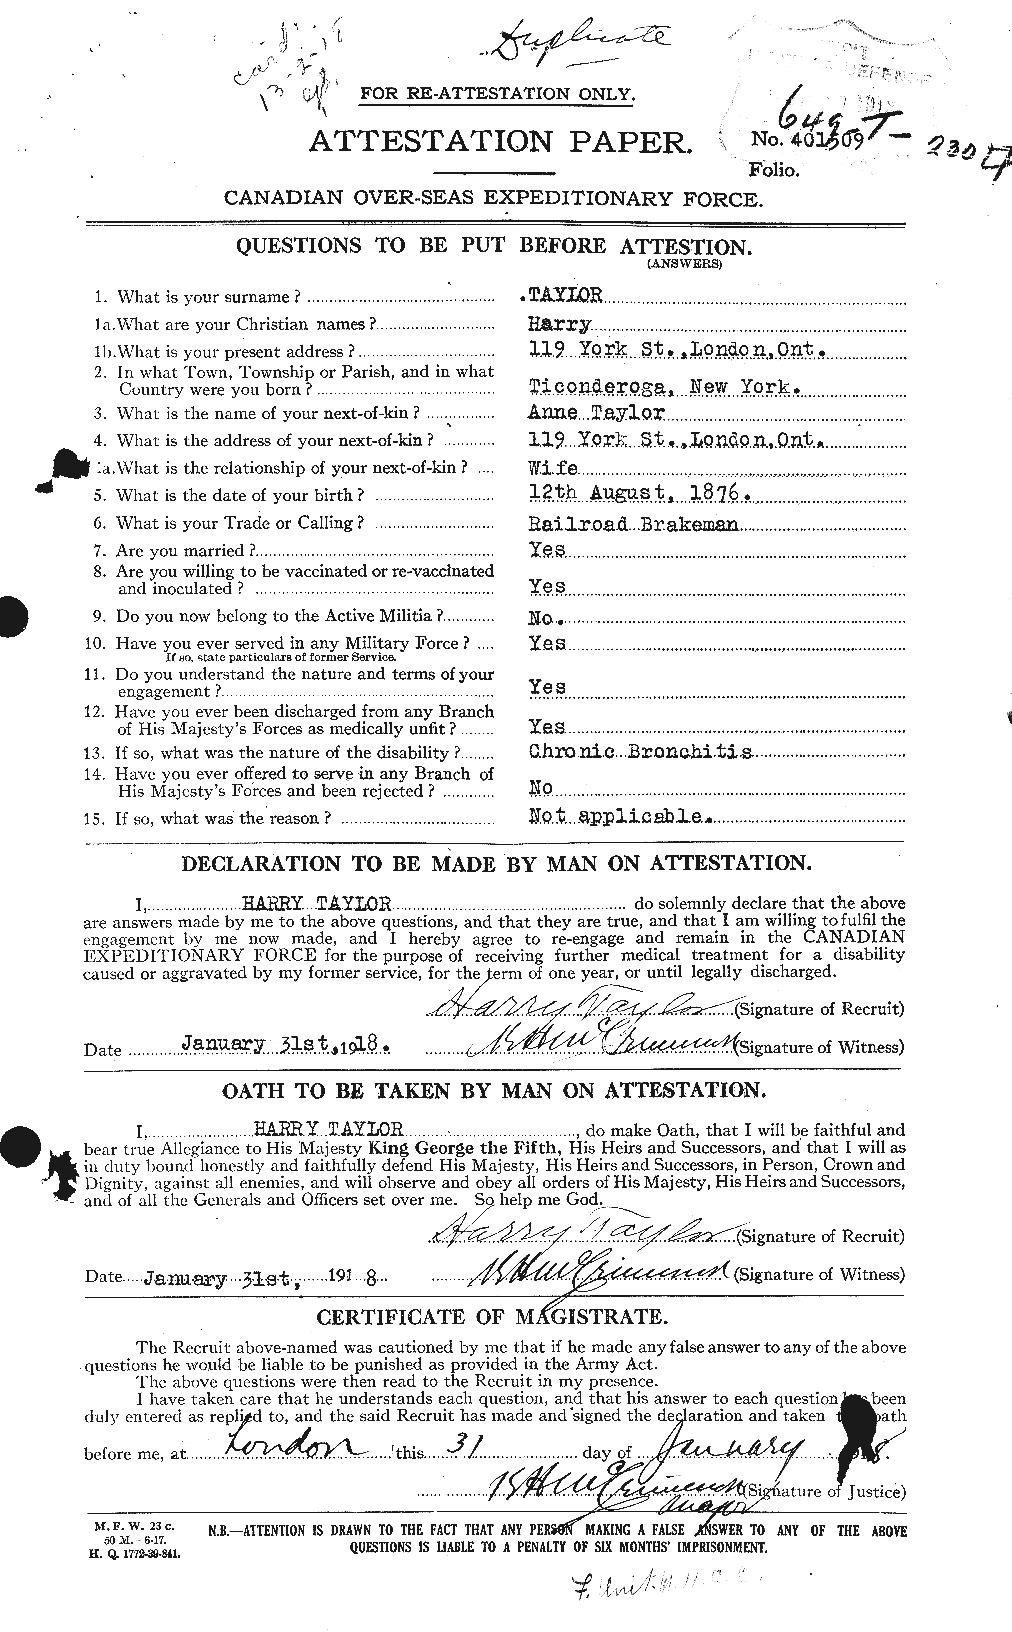 Dossiers du Personnel de la Première Guerre mondiale - CEC 626442a